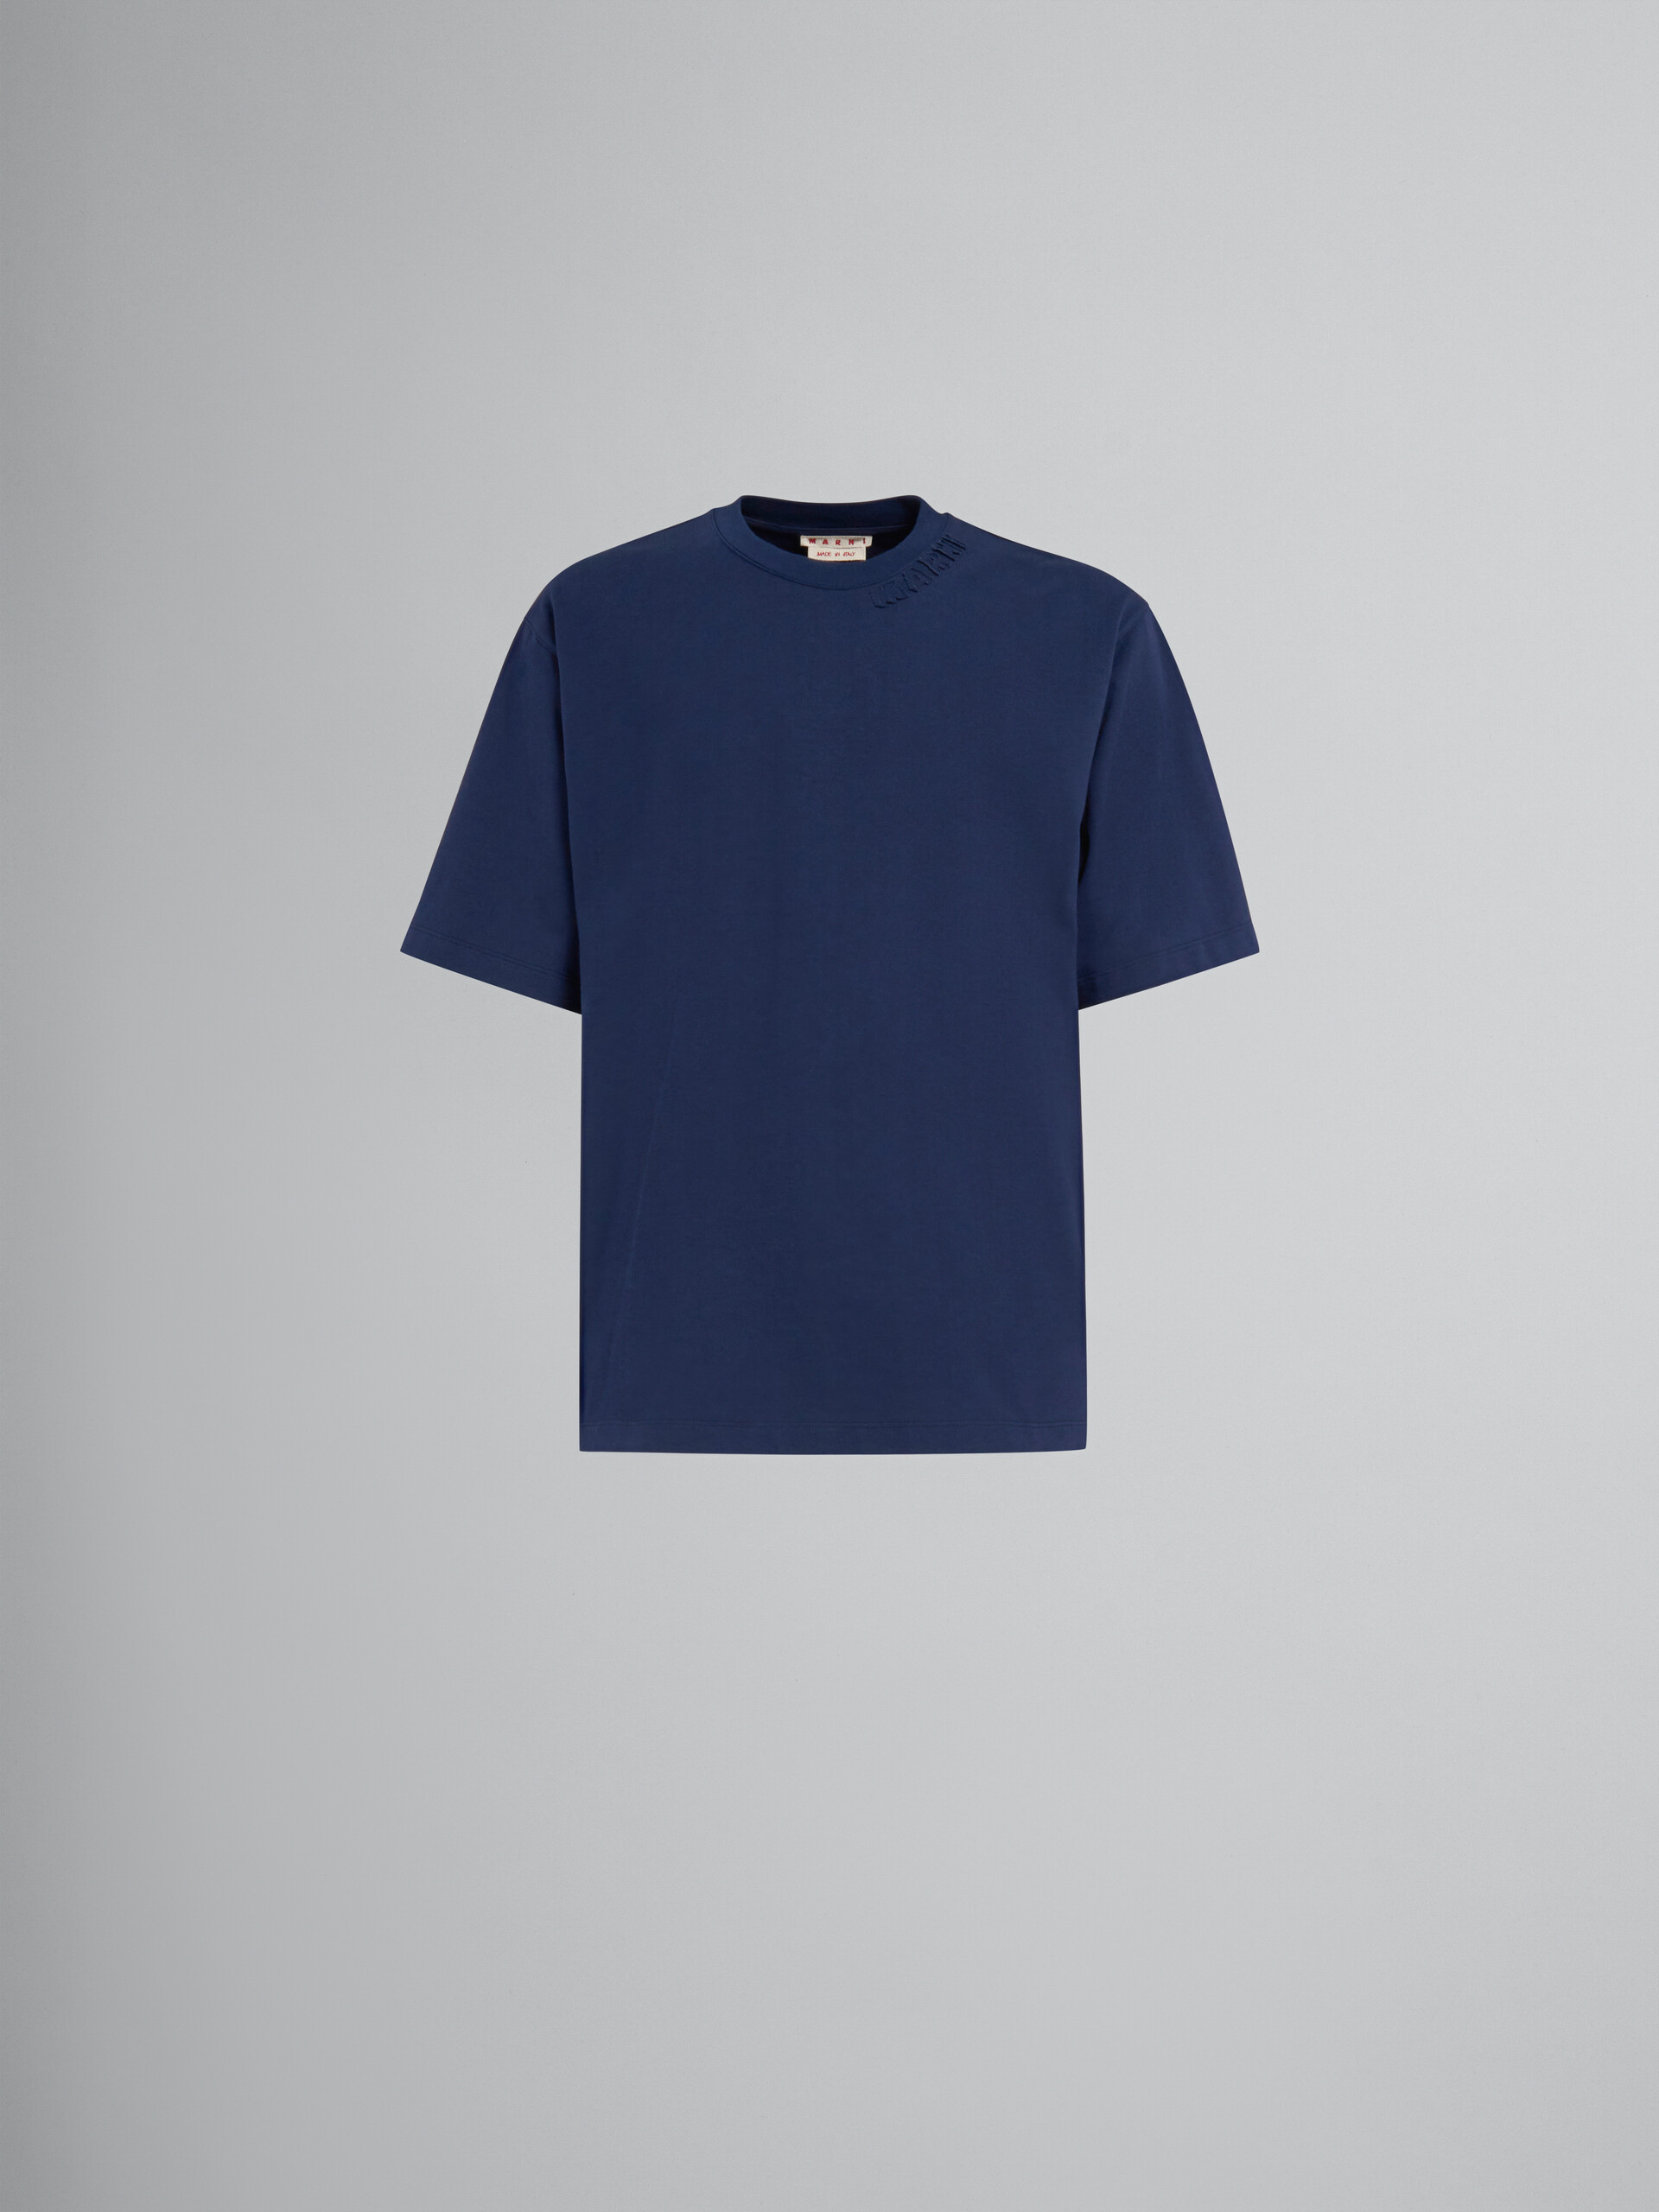 Camiseta oversize azul de algodón ecológico con parches Marni - Camisetas - Image 1